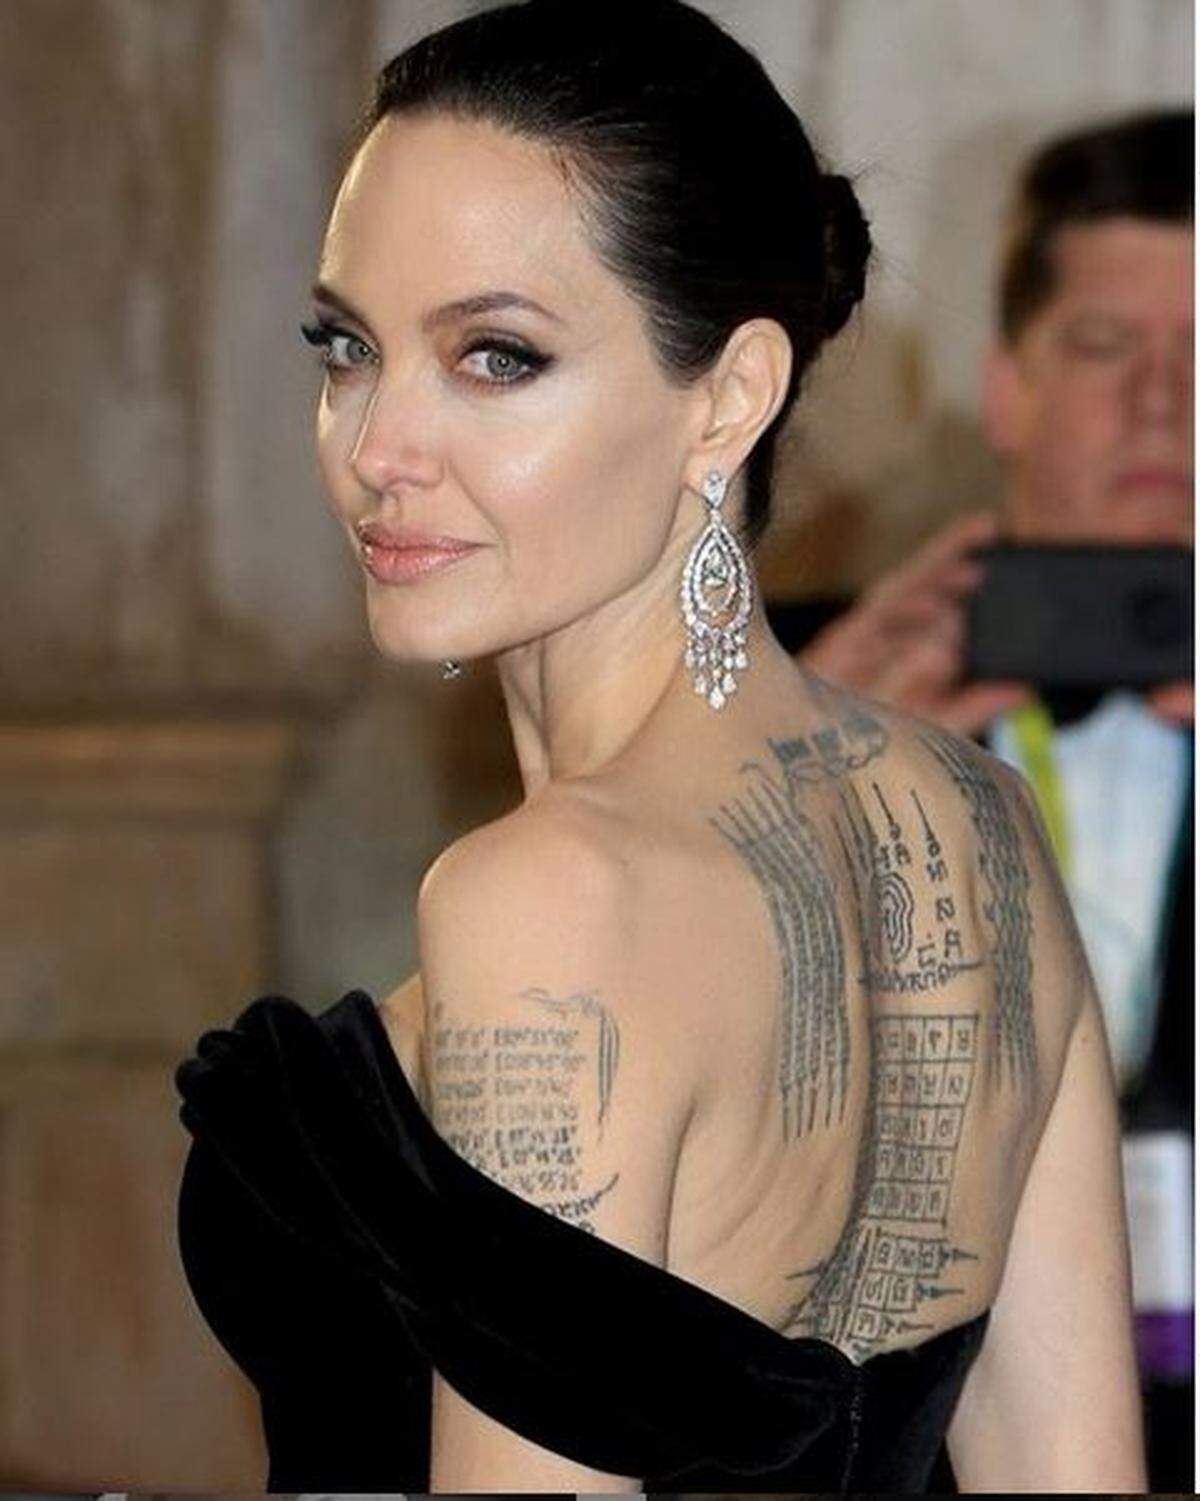 Auch unter Musikern und Schauspielern wurden Tattoos in den vergangenen Jahren immer beliebter. Filmstar Angelina Jolie etwa hat einen besonderen Faible für Tattoos in gotischen Lettern. Ihr Rücken wird unter anderem von einer buddhistischen Beschwörung in Khmer-Schrift geziert. Die Geburtskoordinaten von ihrem Ex-Mann Brad Pitt ließ sich nach der Trennung allerdings wieder weglasern.